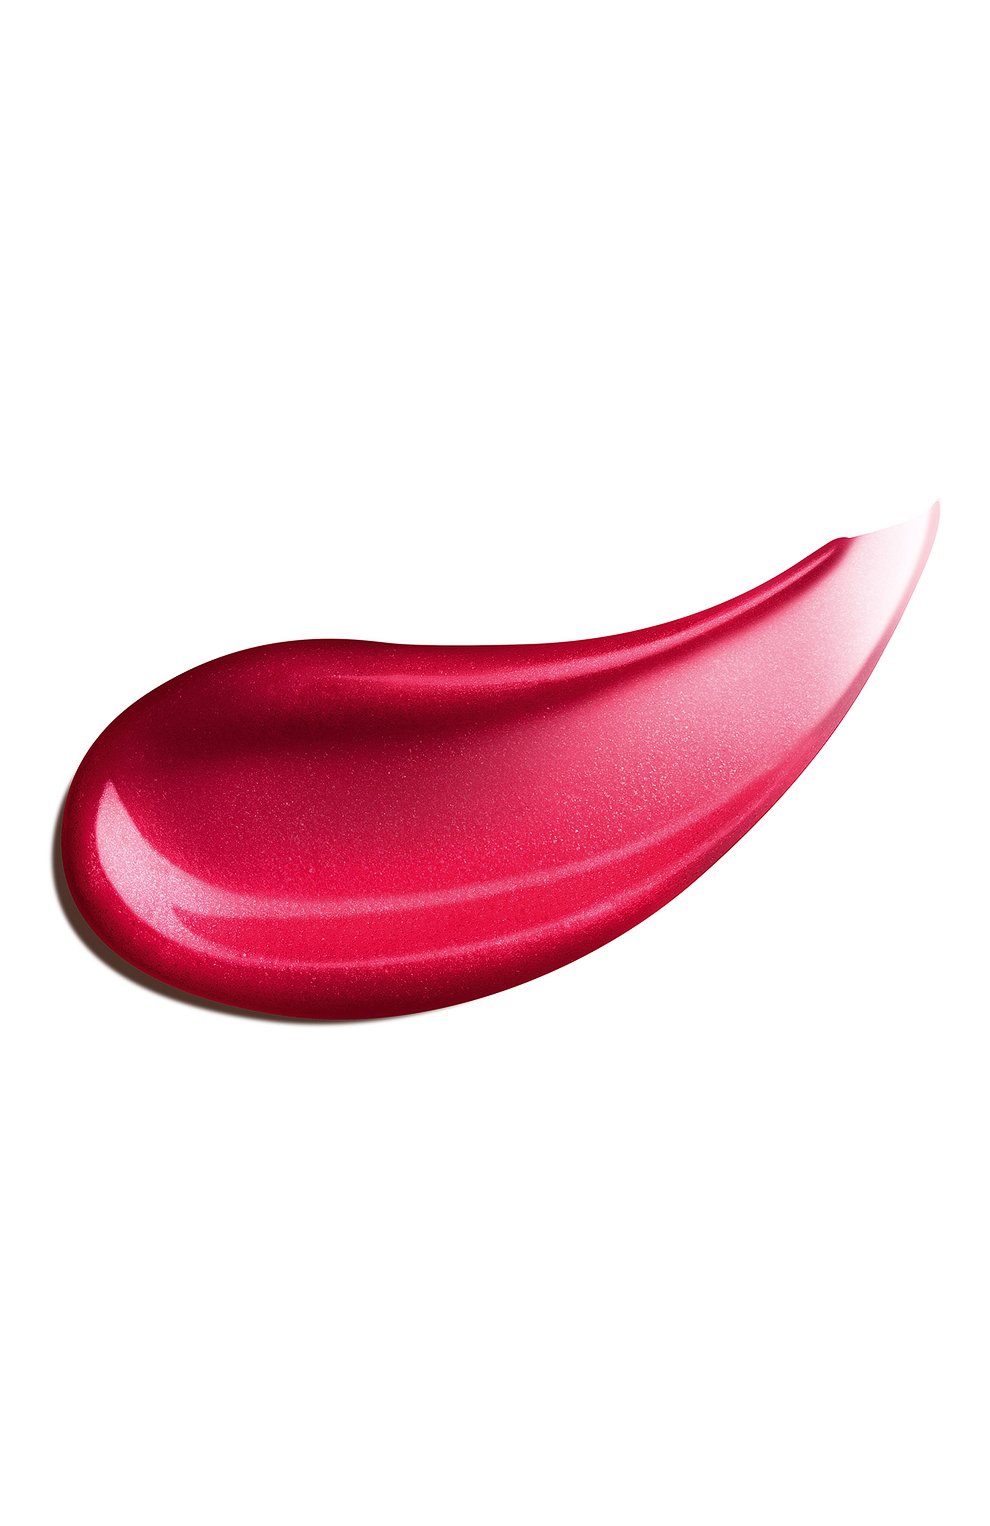 Блеск для губ lip perfector, оттенок 24 fuchsia glow (12ml) CLARINS  цвета, арт. 80098706 | Фото 2 (Обьем косметики: 100ml; Финишное покрытие: Блестящий)